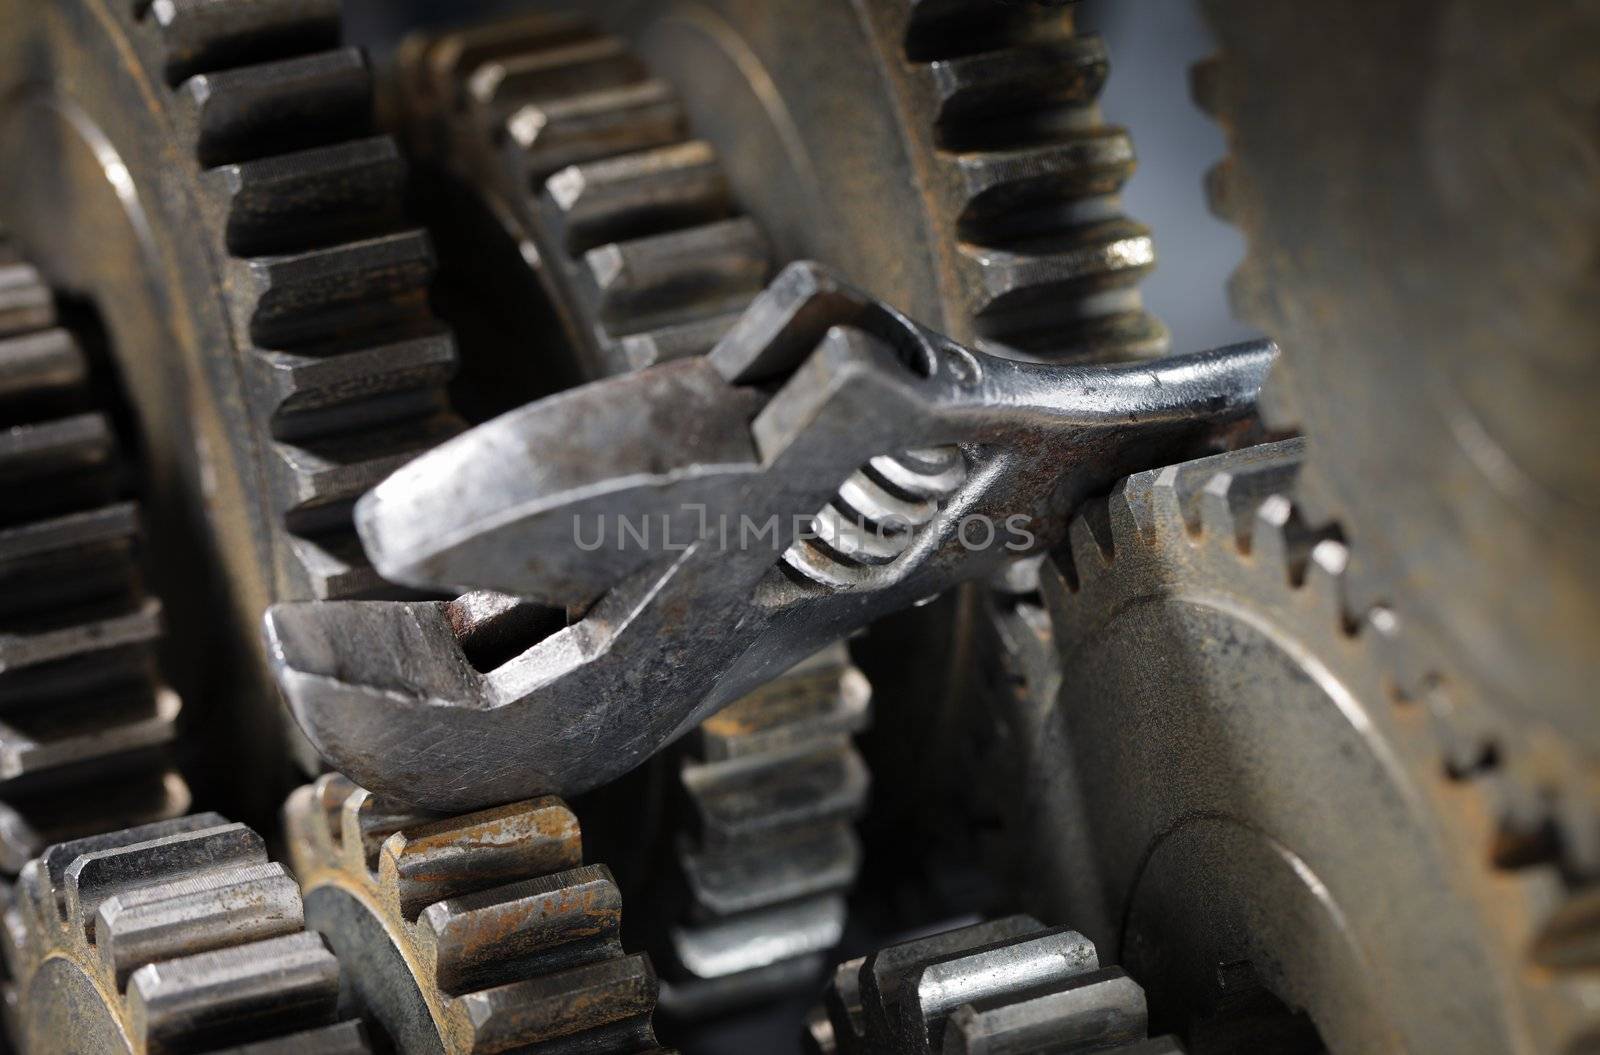 Adjustble wrench stuck between cog gear wheels.